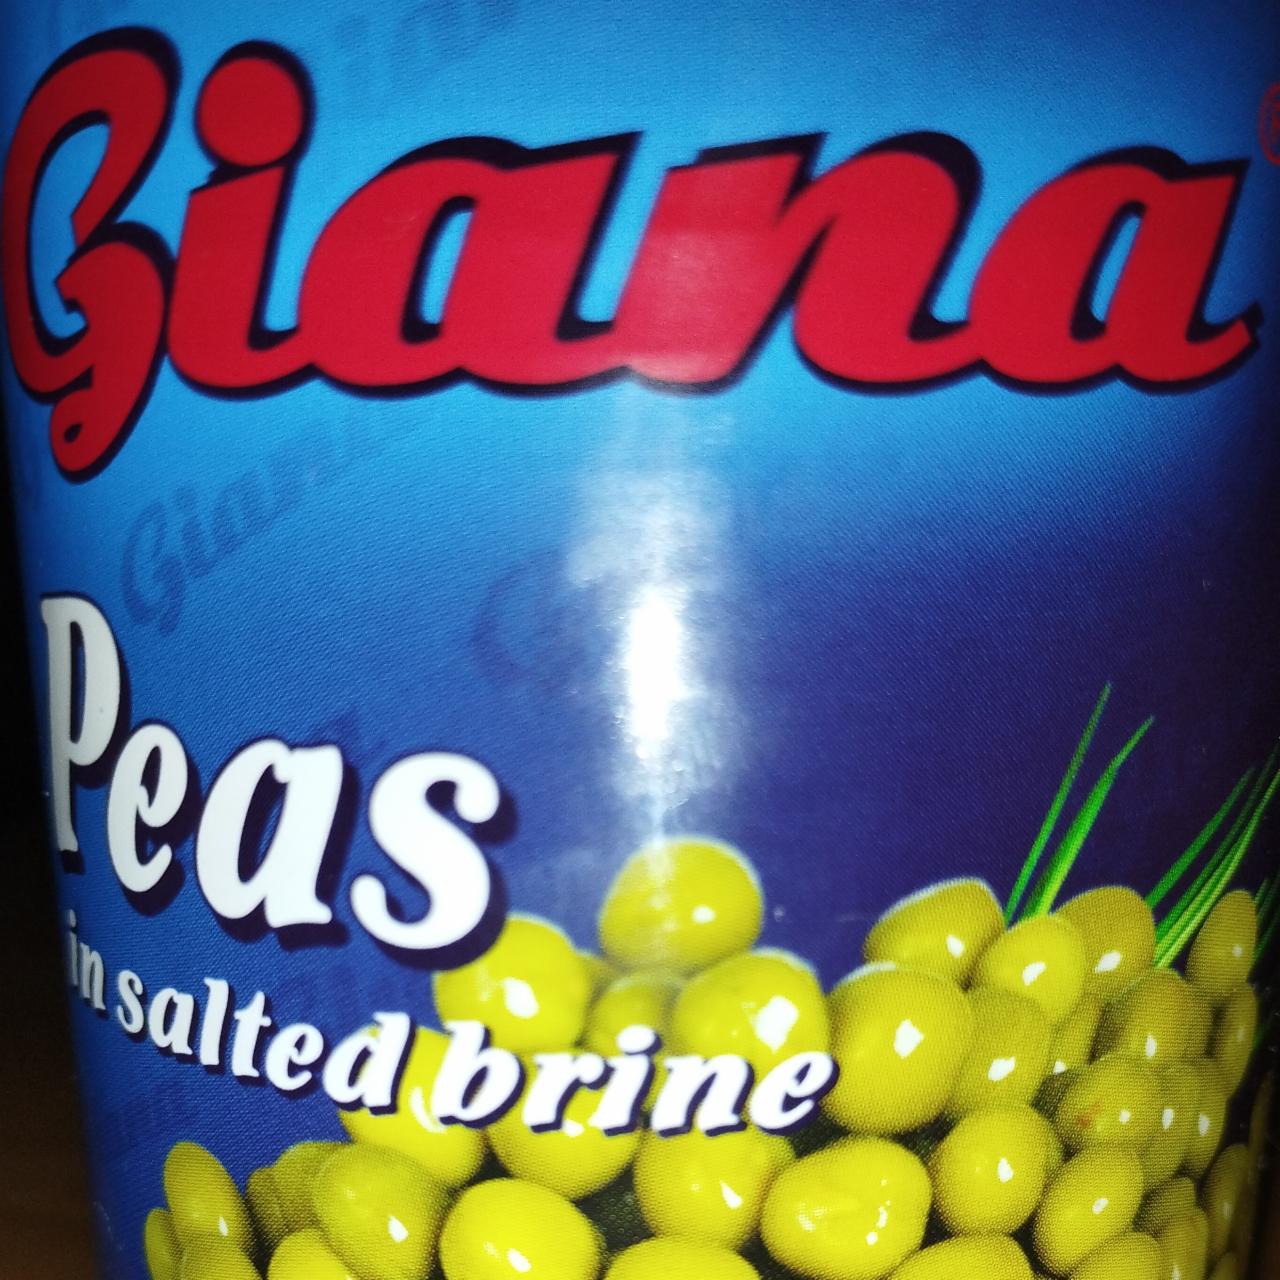 Fotografie - Peas in salted brine Giana